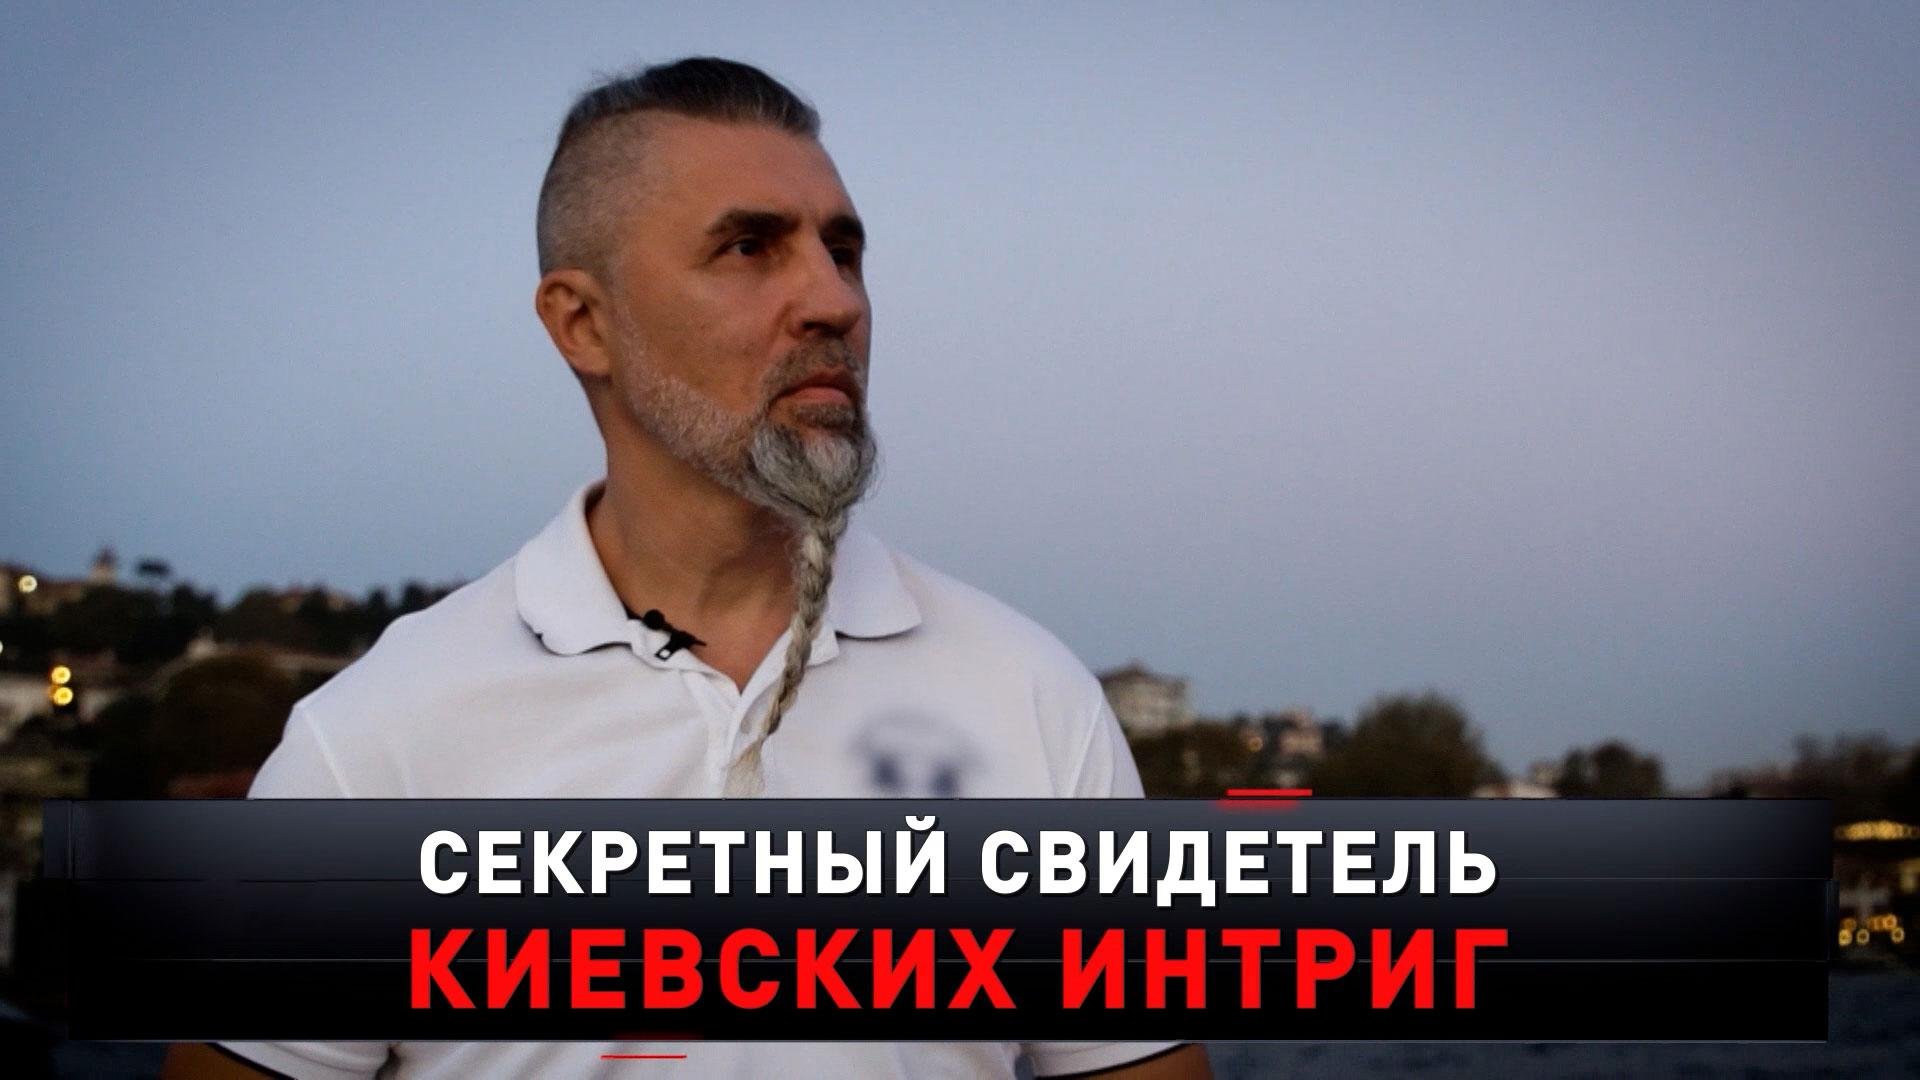 «Секретный свидетель киевских интриг» | «Новые русские сенсации»